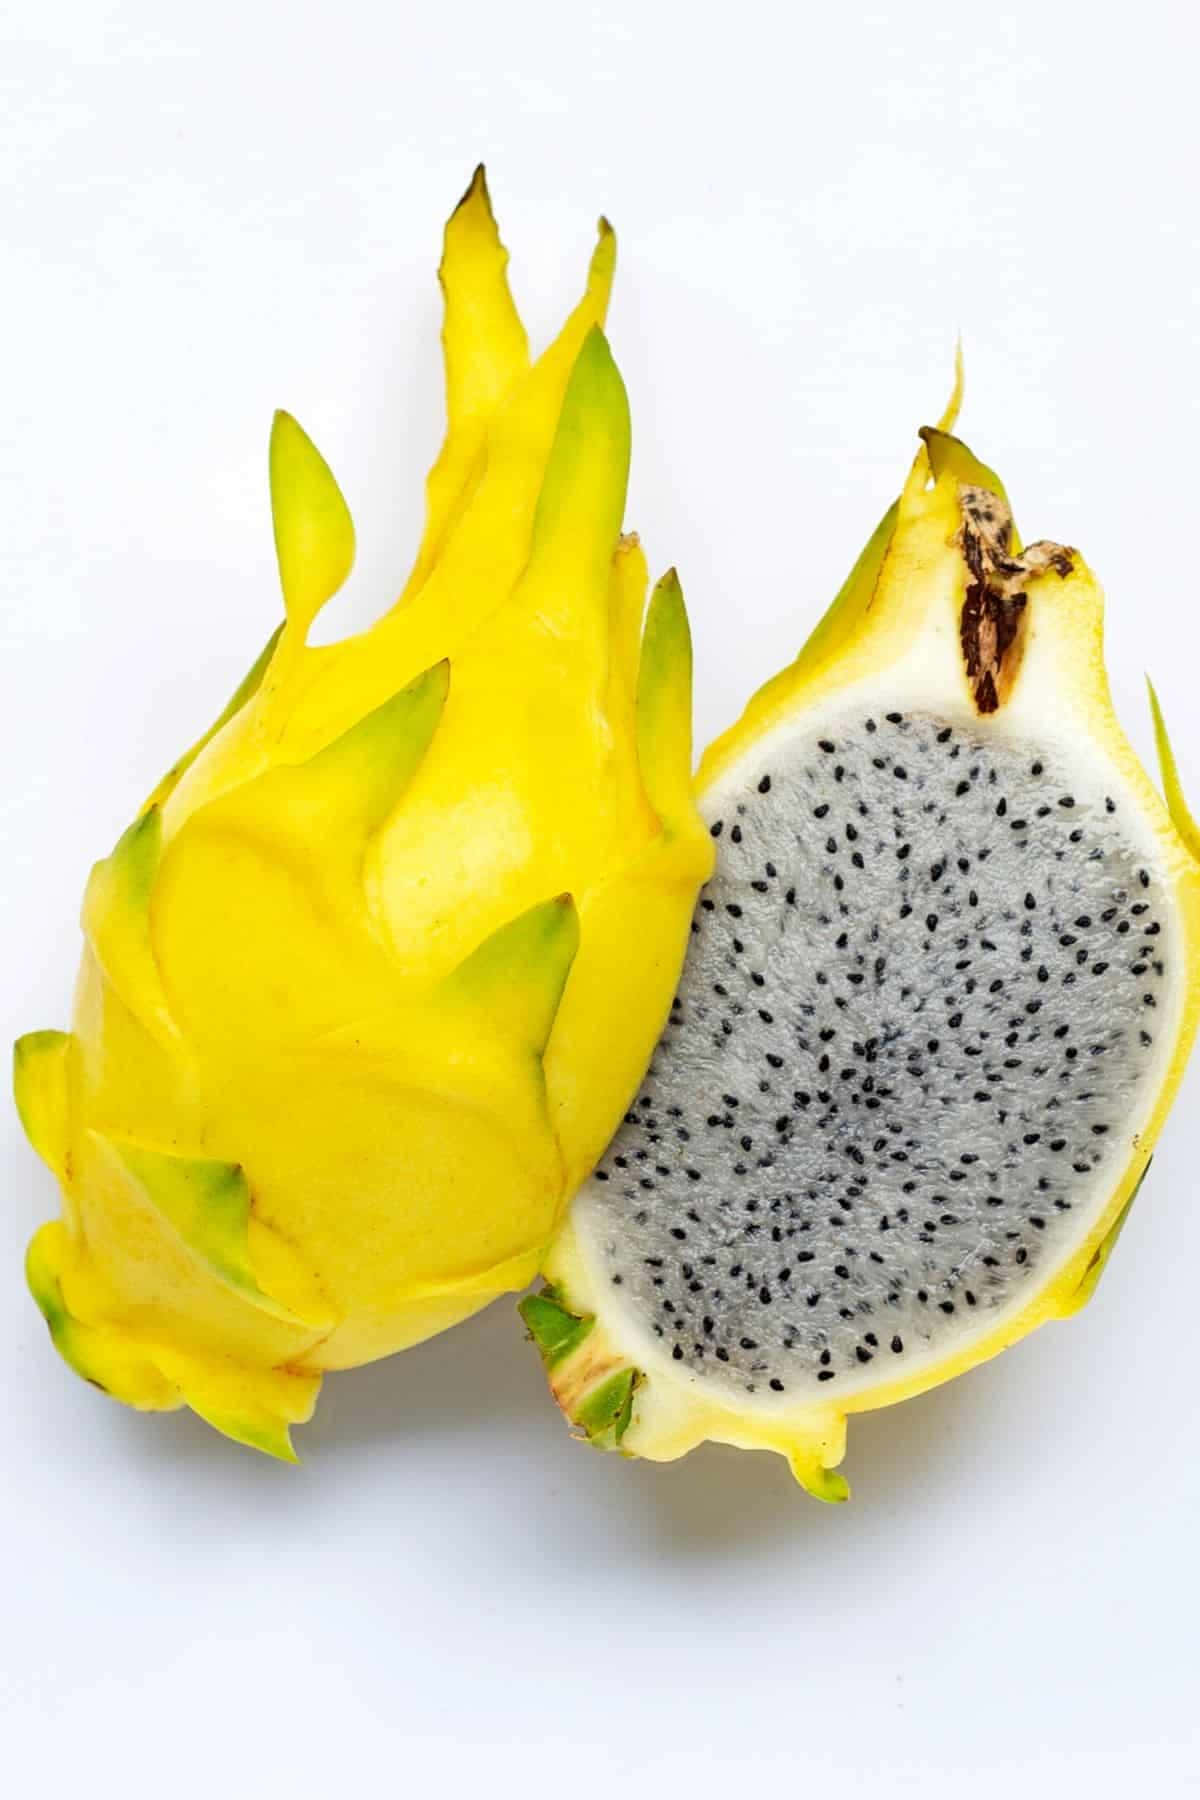 Lapitahaya Es Una Fruta Tropical Que Se Corta Por La Mitad.